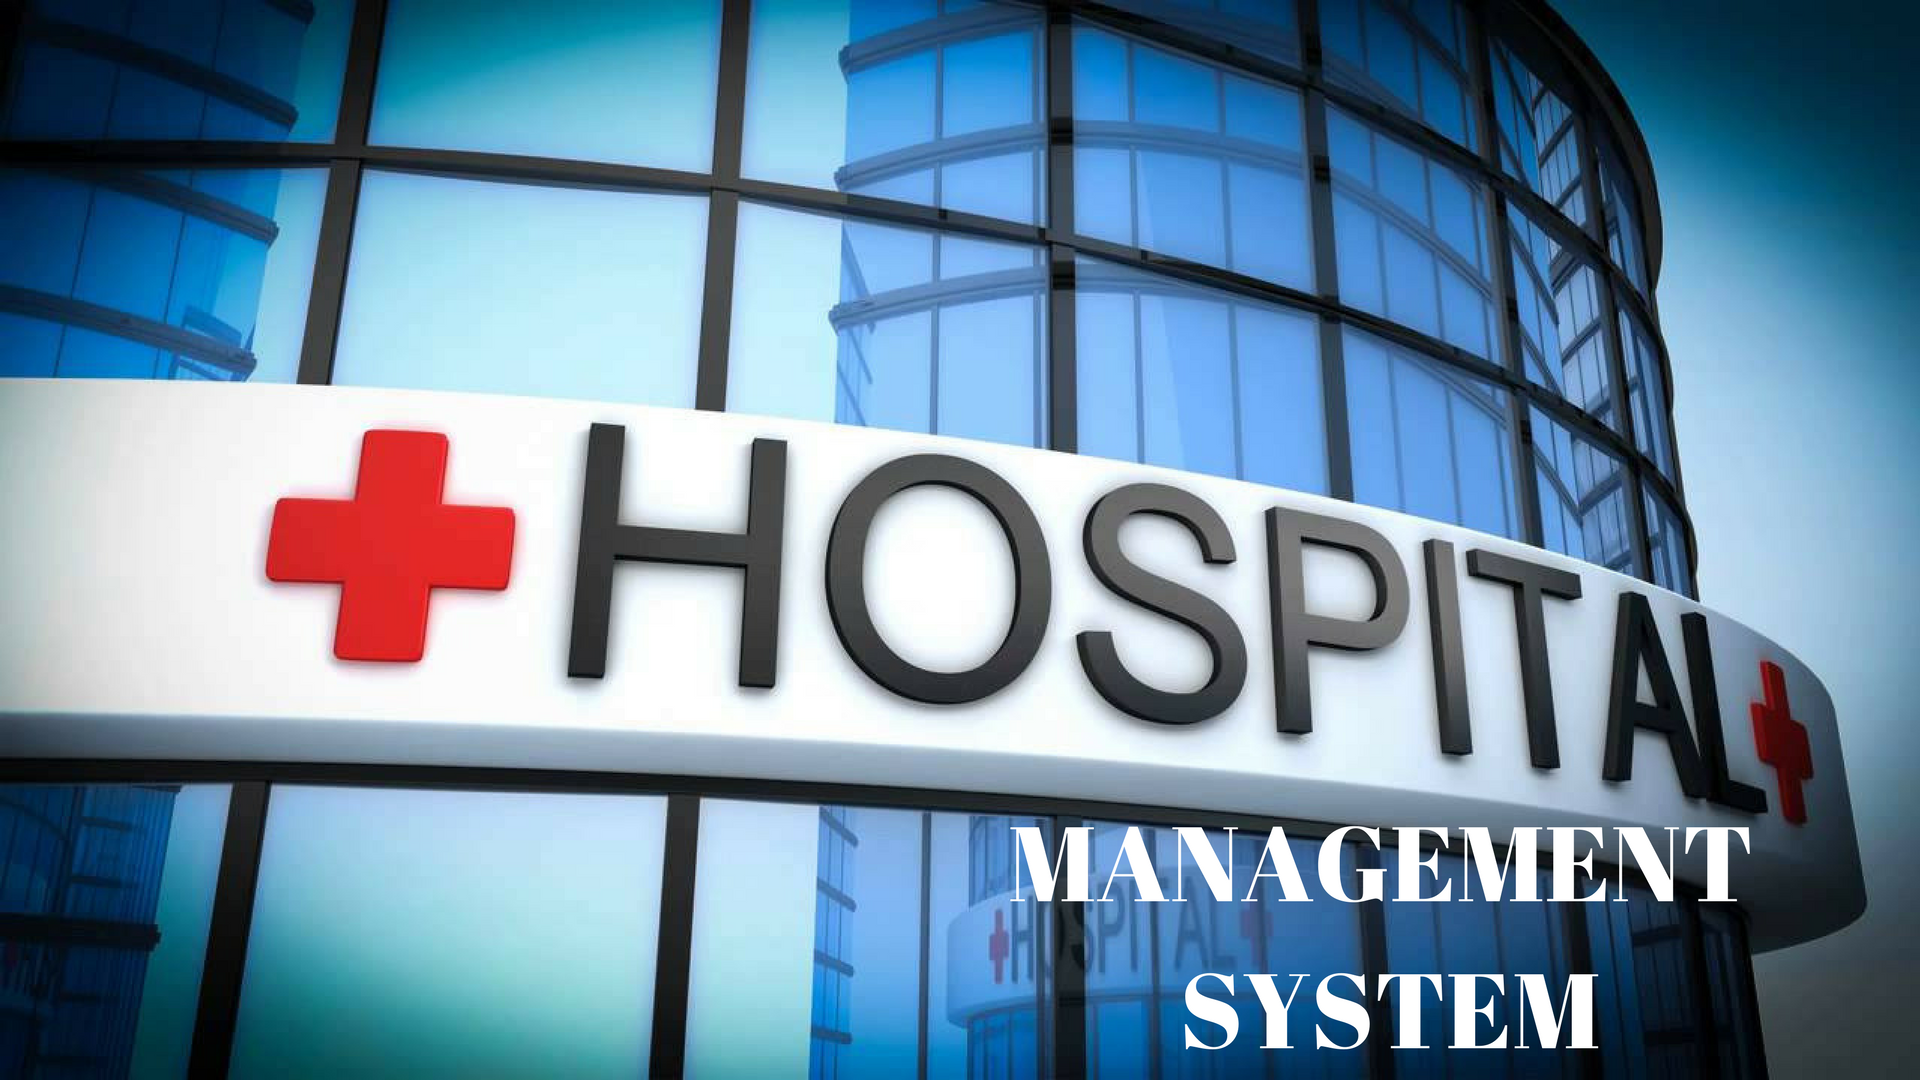 Hospital Management System Image HD